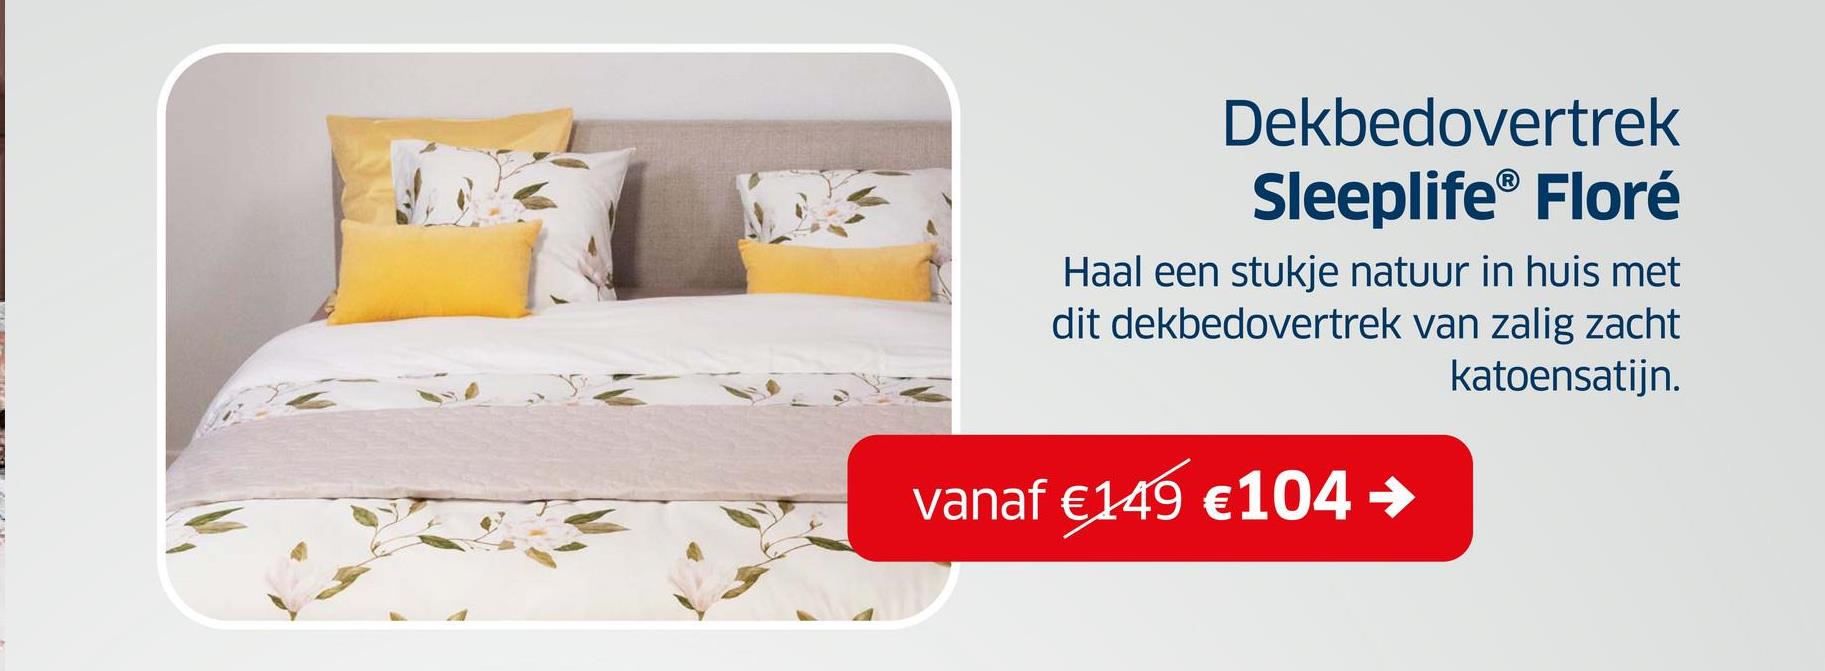 Dekbedovertrek
Sleeplife® Floré
Haal een stukje natuur in huis met
dit dekbedovertrek van zalig zacht
katoensatijn.
vanaf €149 €104 →